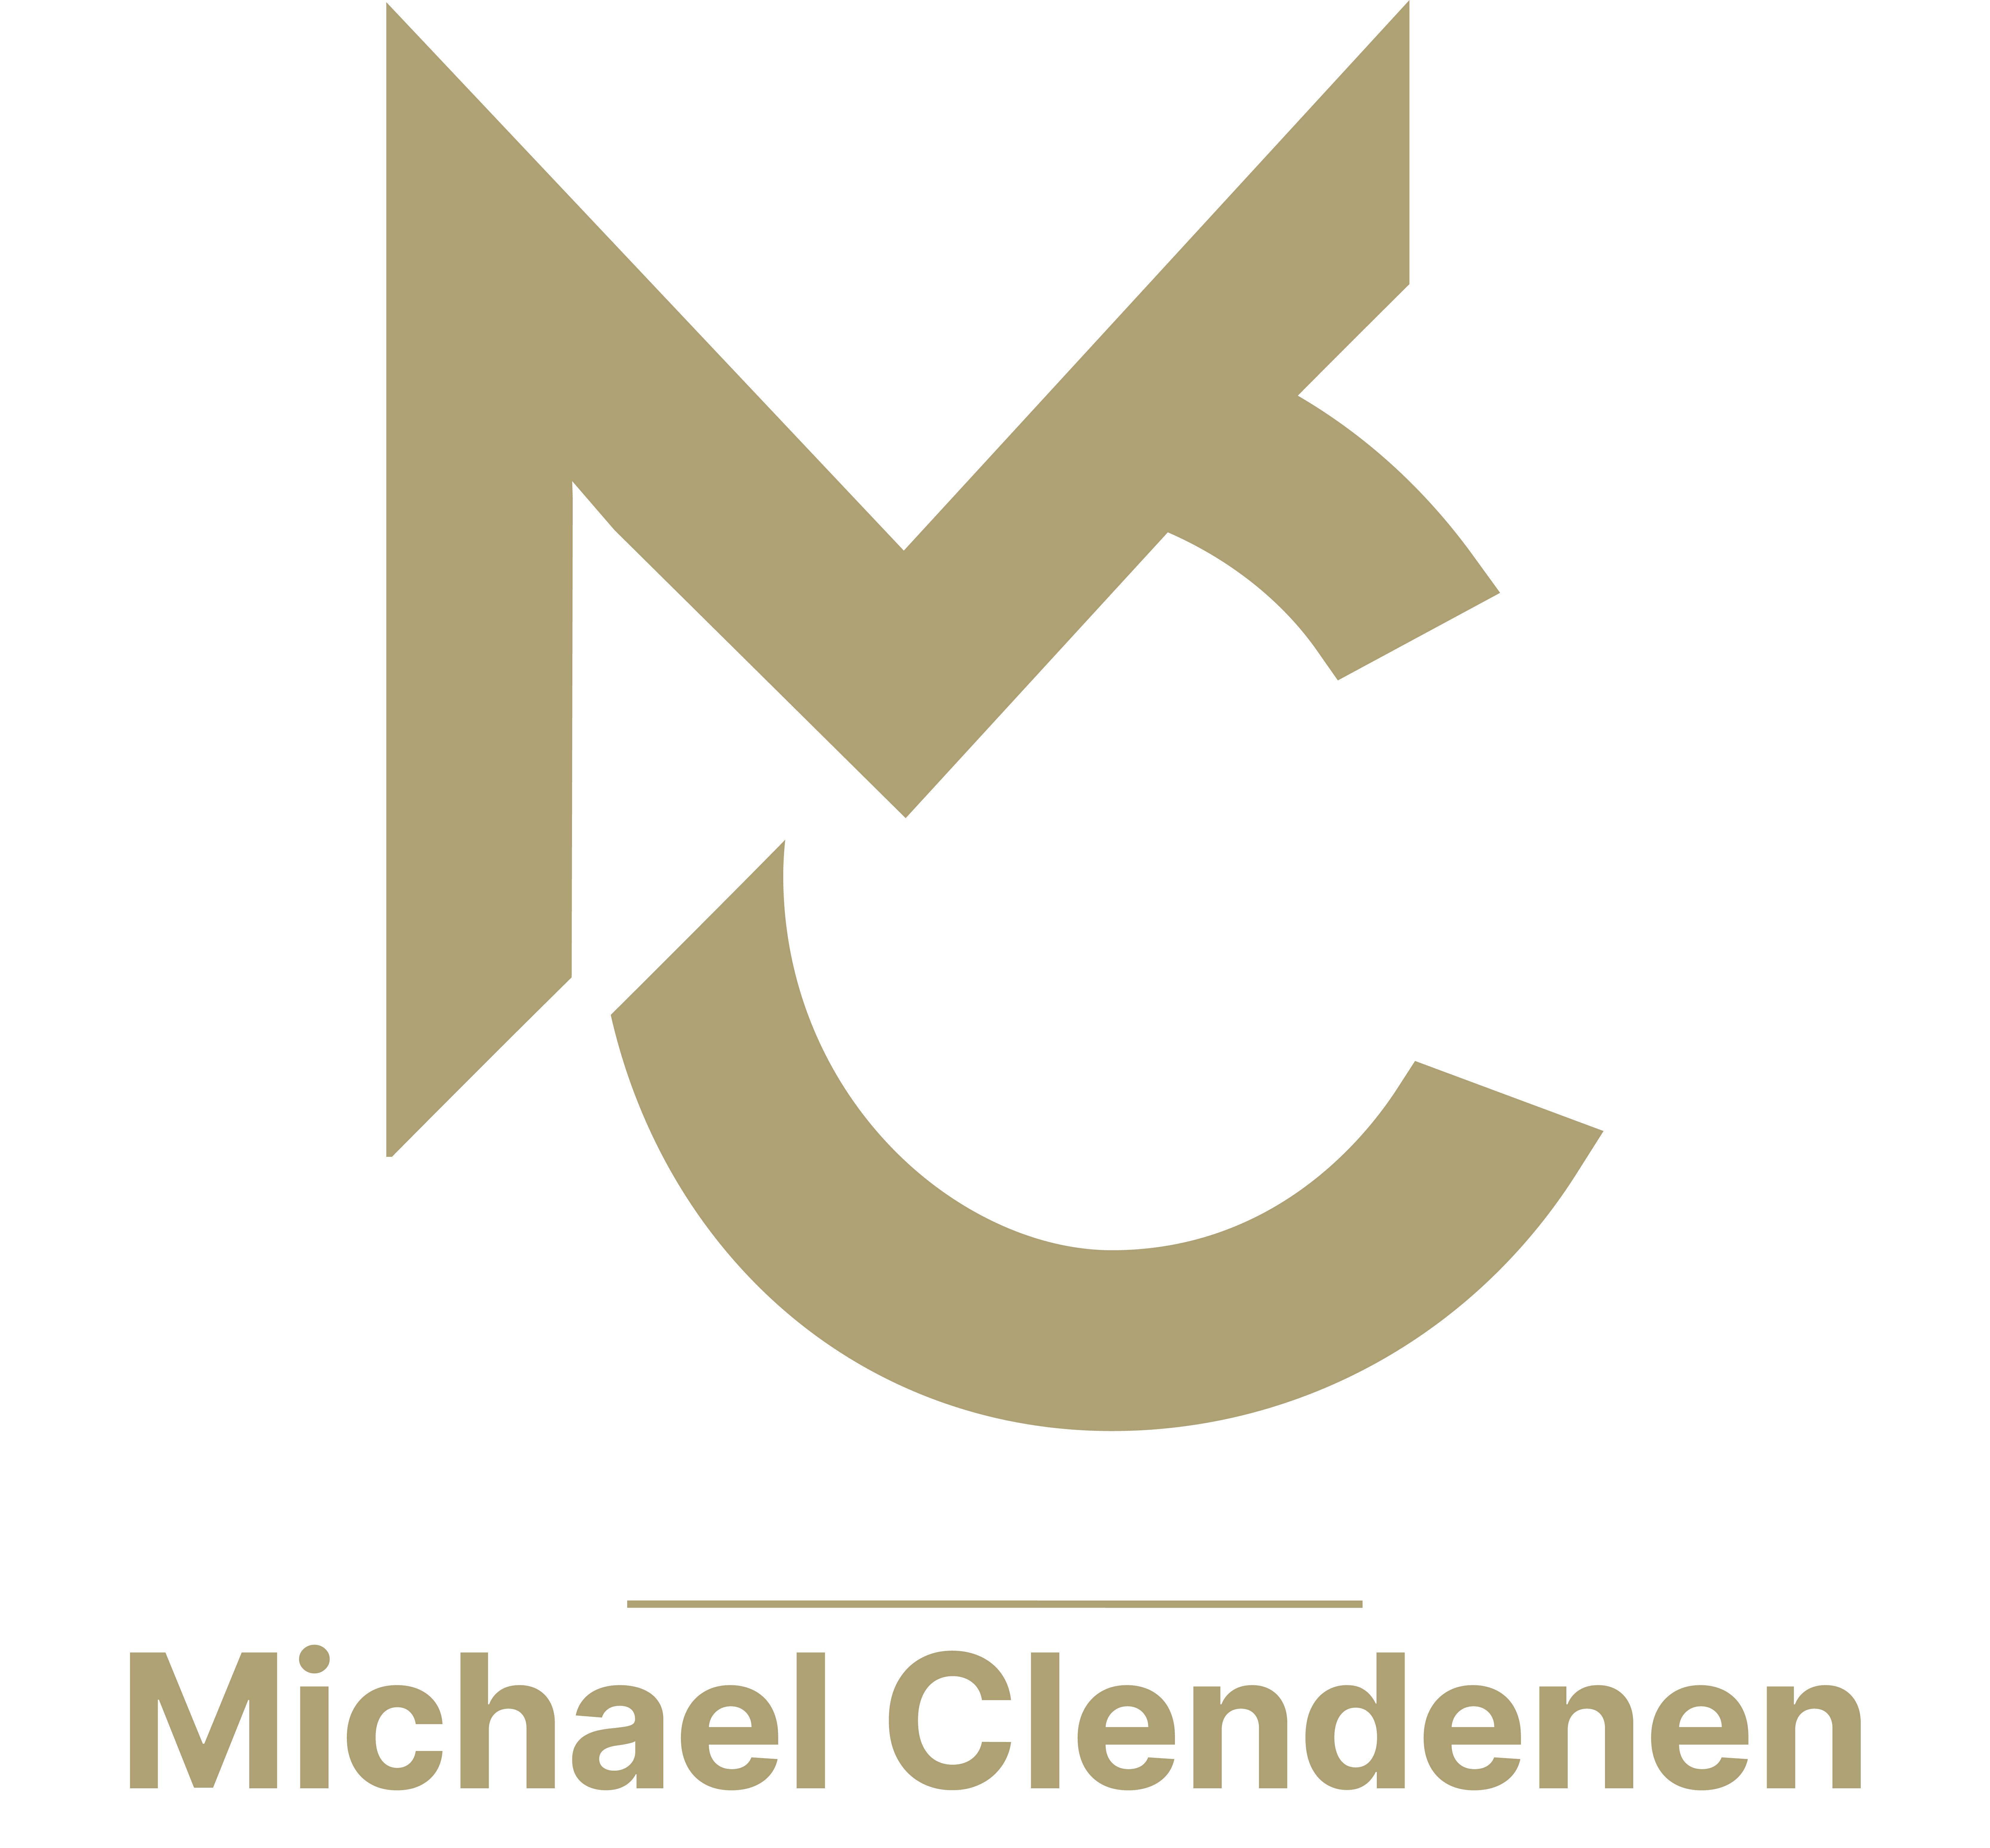 Michael Clendenen